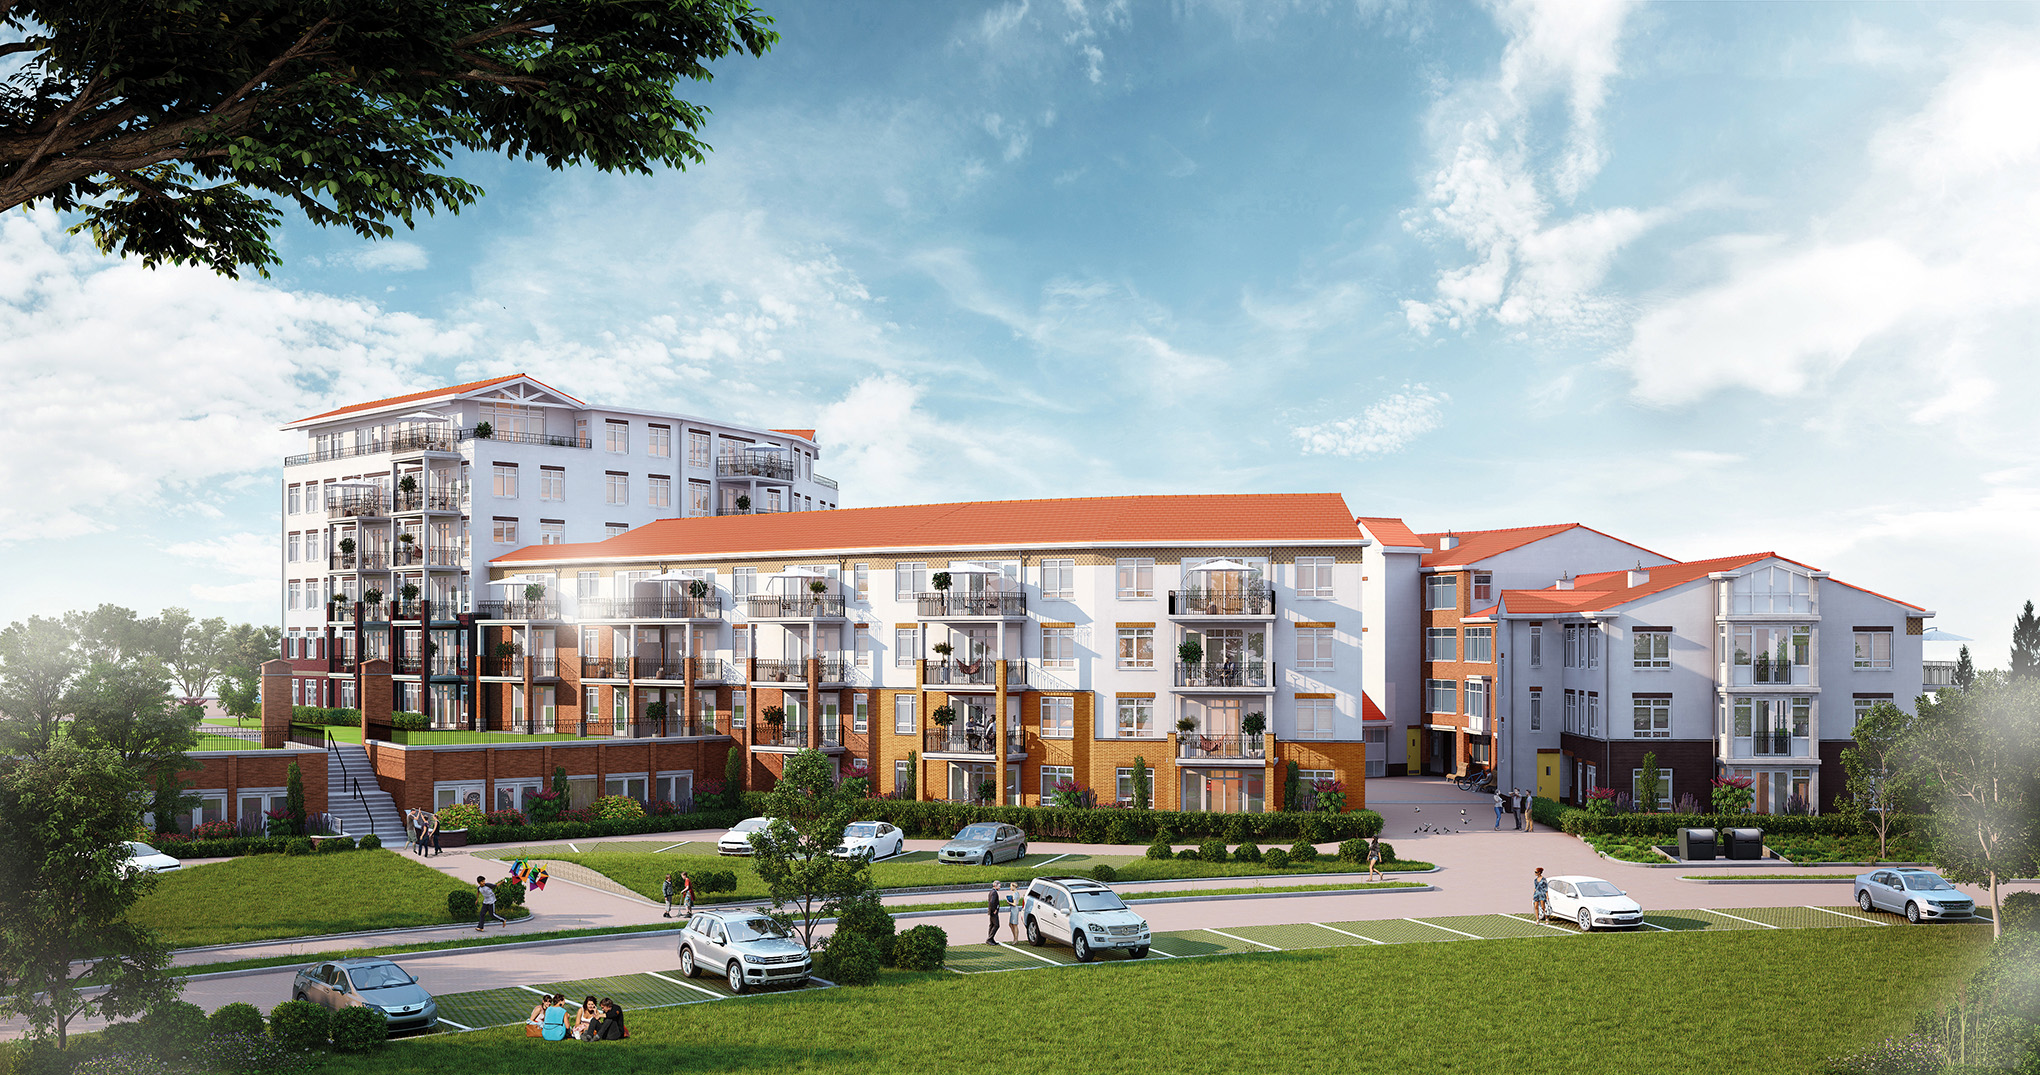 Laatste fase 500 appartementen Bloem Rijnsburg (2015-2020)